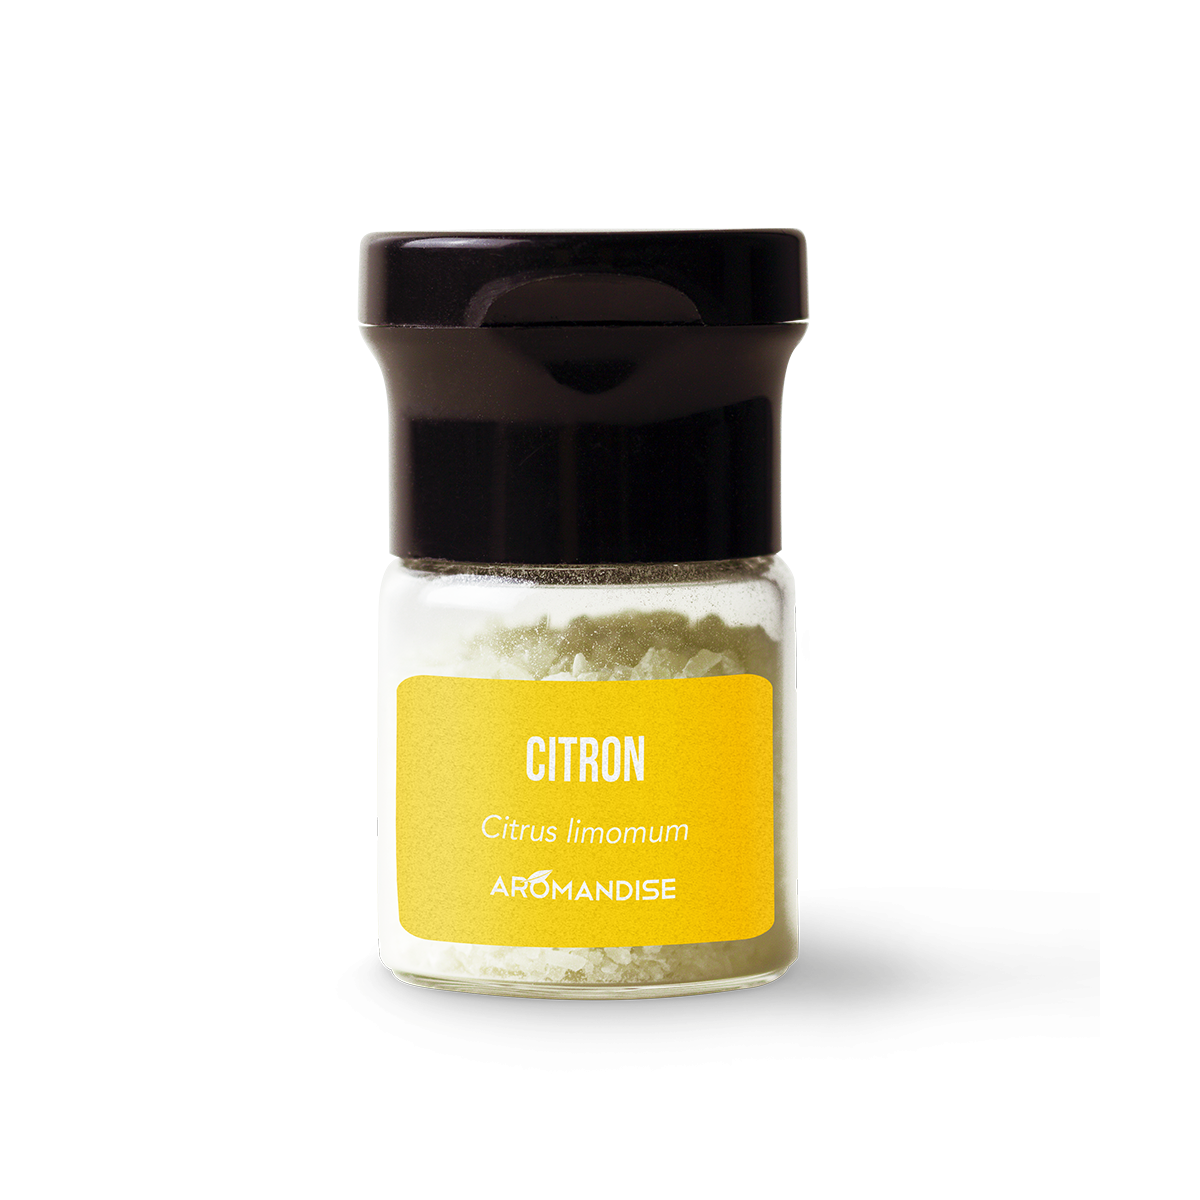 Aromandise Cristaux d' huile essentielle de citron bio 10g - 8298